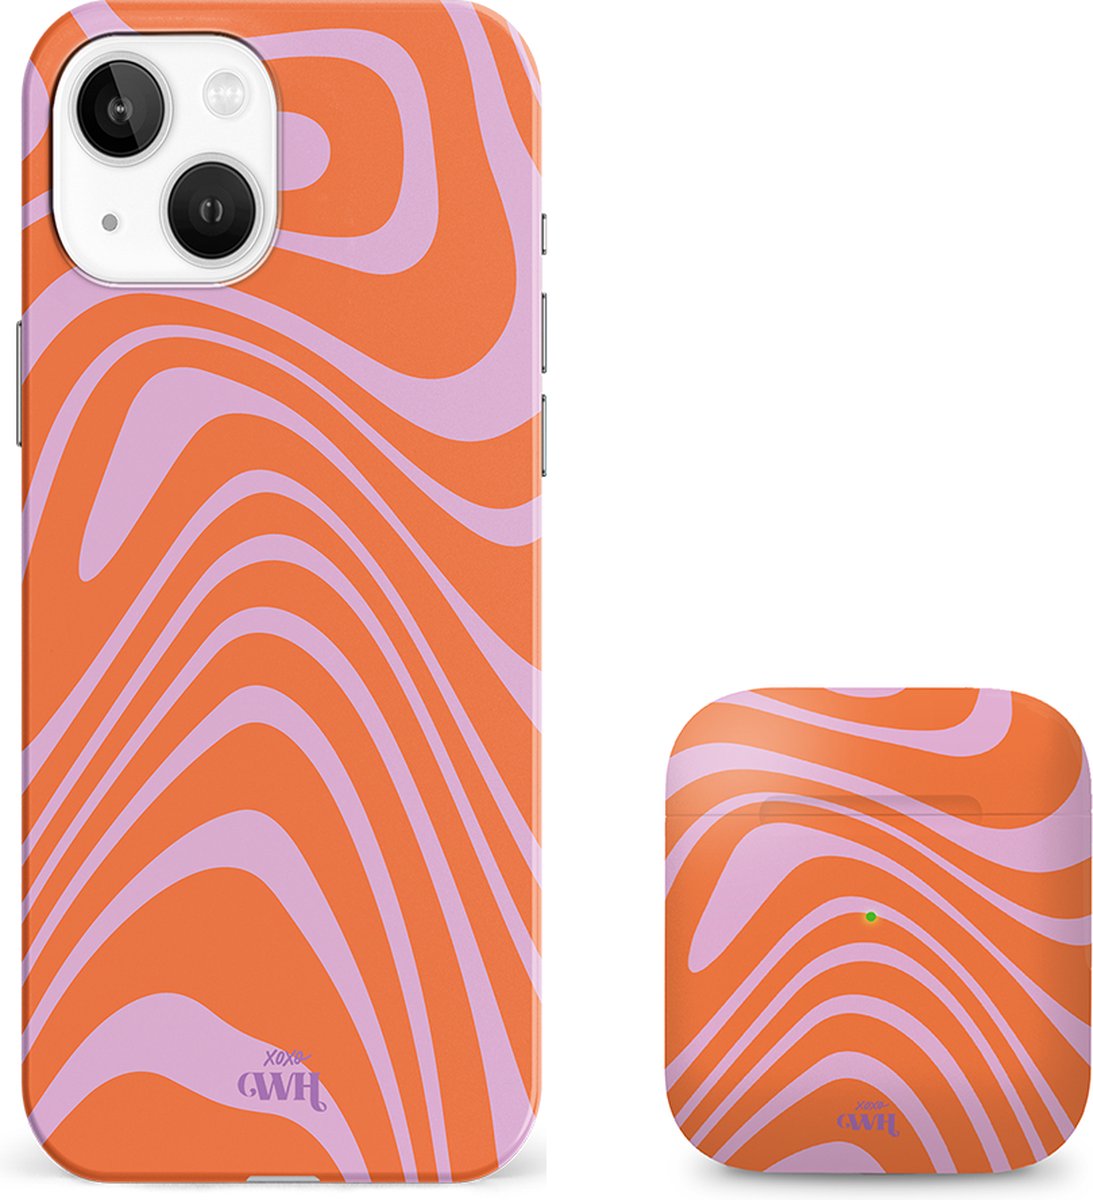 xoxo Wildhearts siliconen hoesje + AirPods 1/2 hoesje - Geschikt voor iPhone 13 en AirPods 1 en 2 - Boogie Wonderland Orange - Single layer telefoonhoesje - Oranje - Roze - Hoesje met print